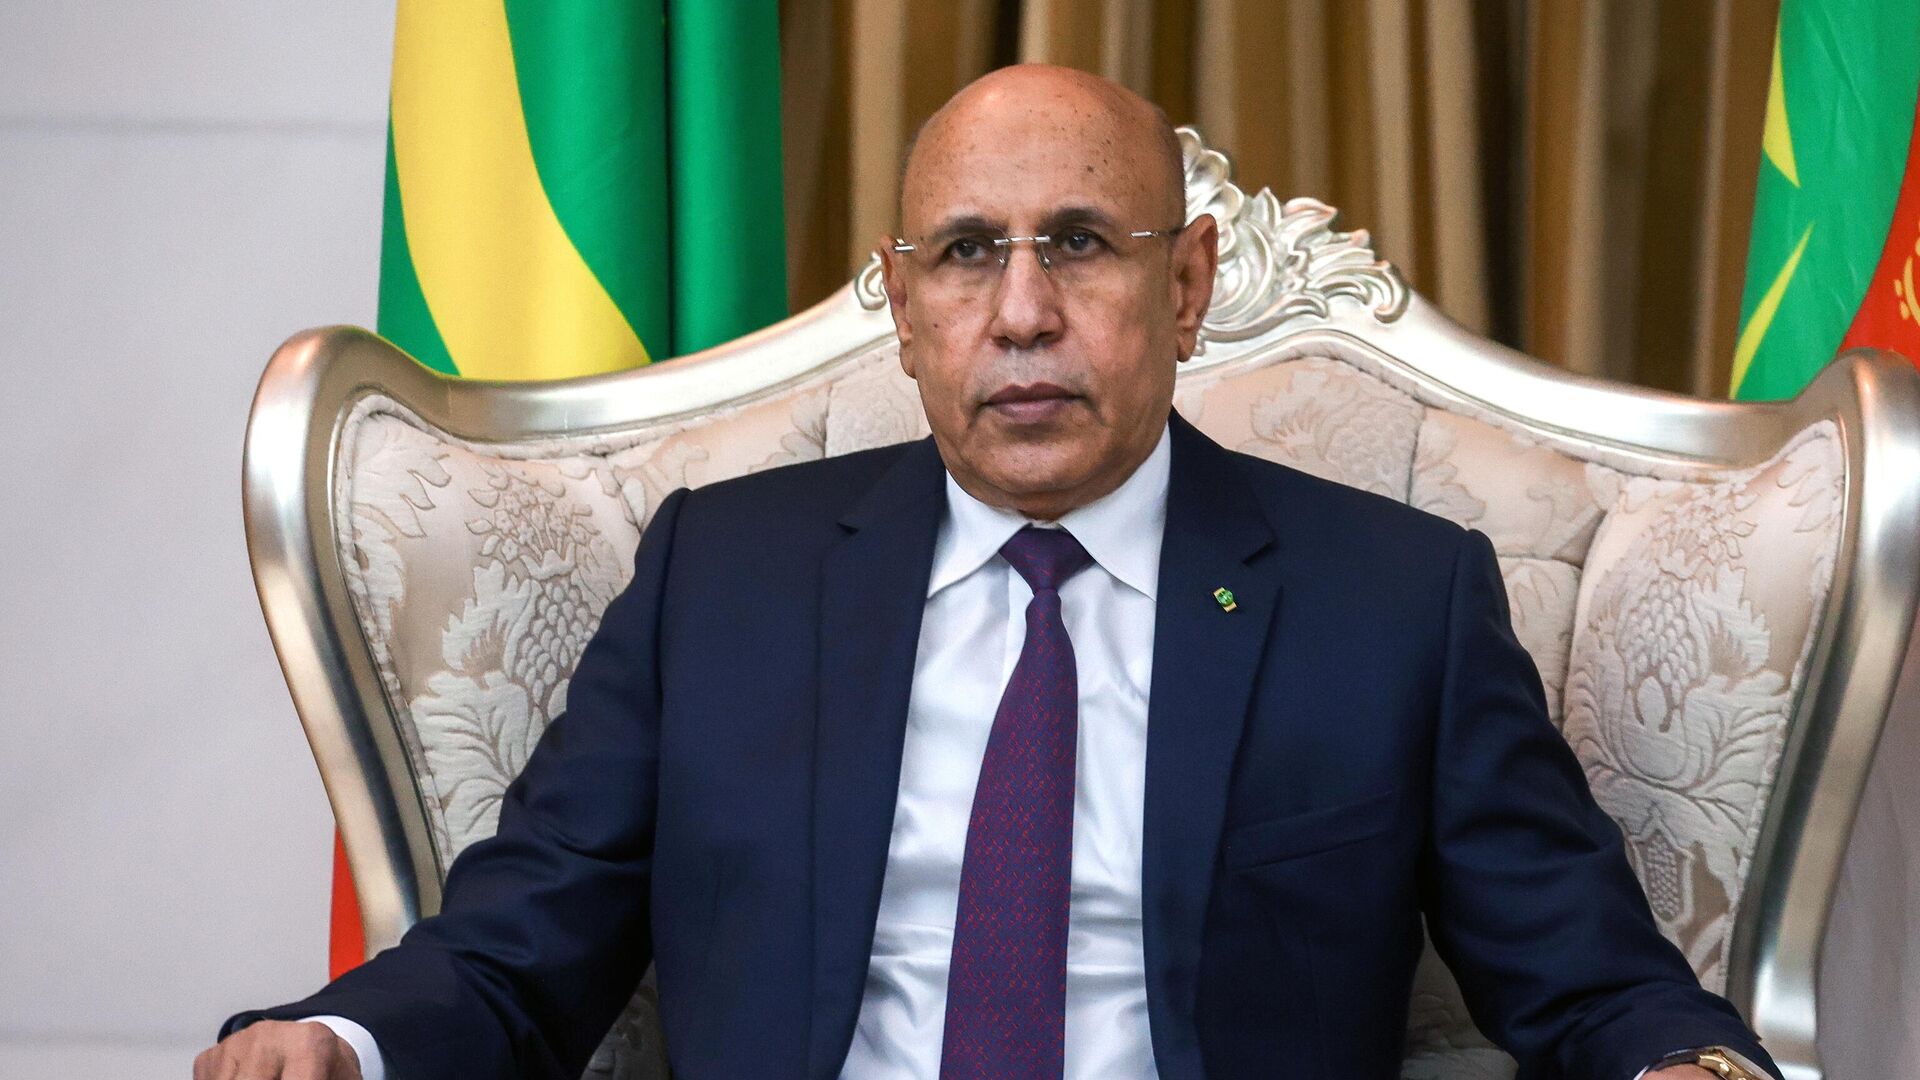 Elezioni in Mauritania, confermato il presidente Ghazouani. Lo sfidante Abeid contesta i risultati